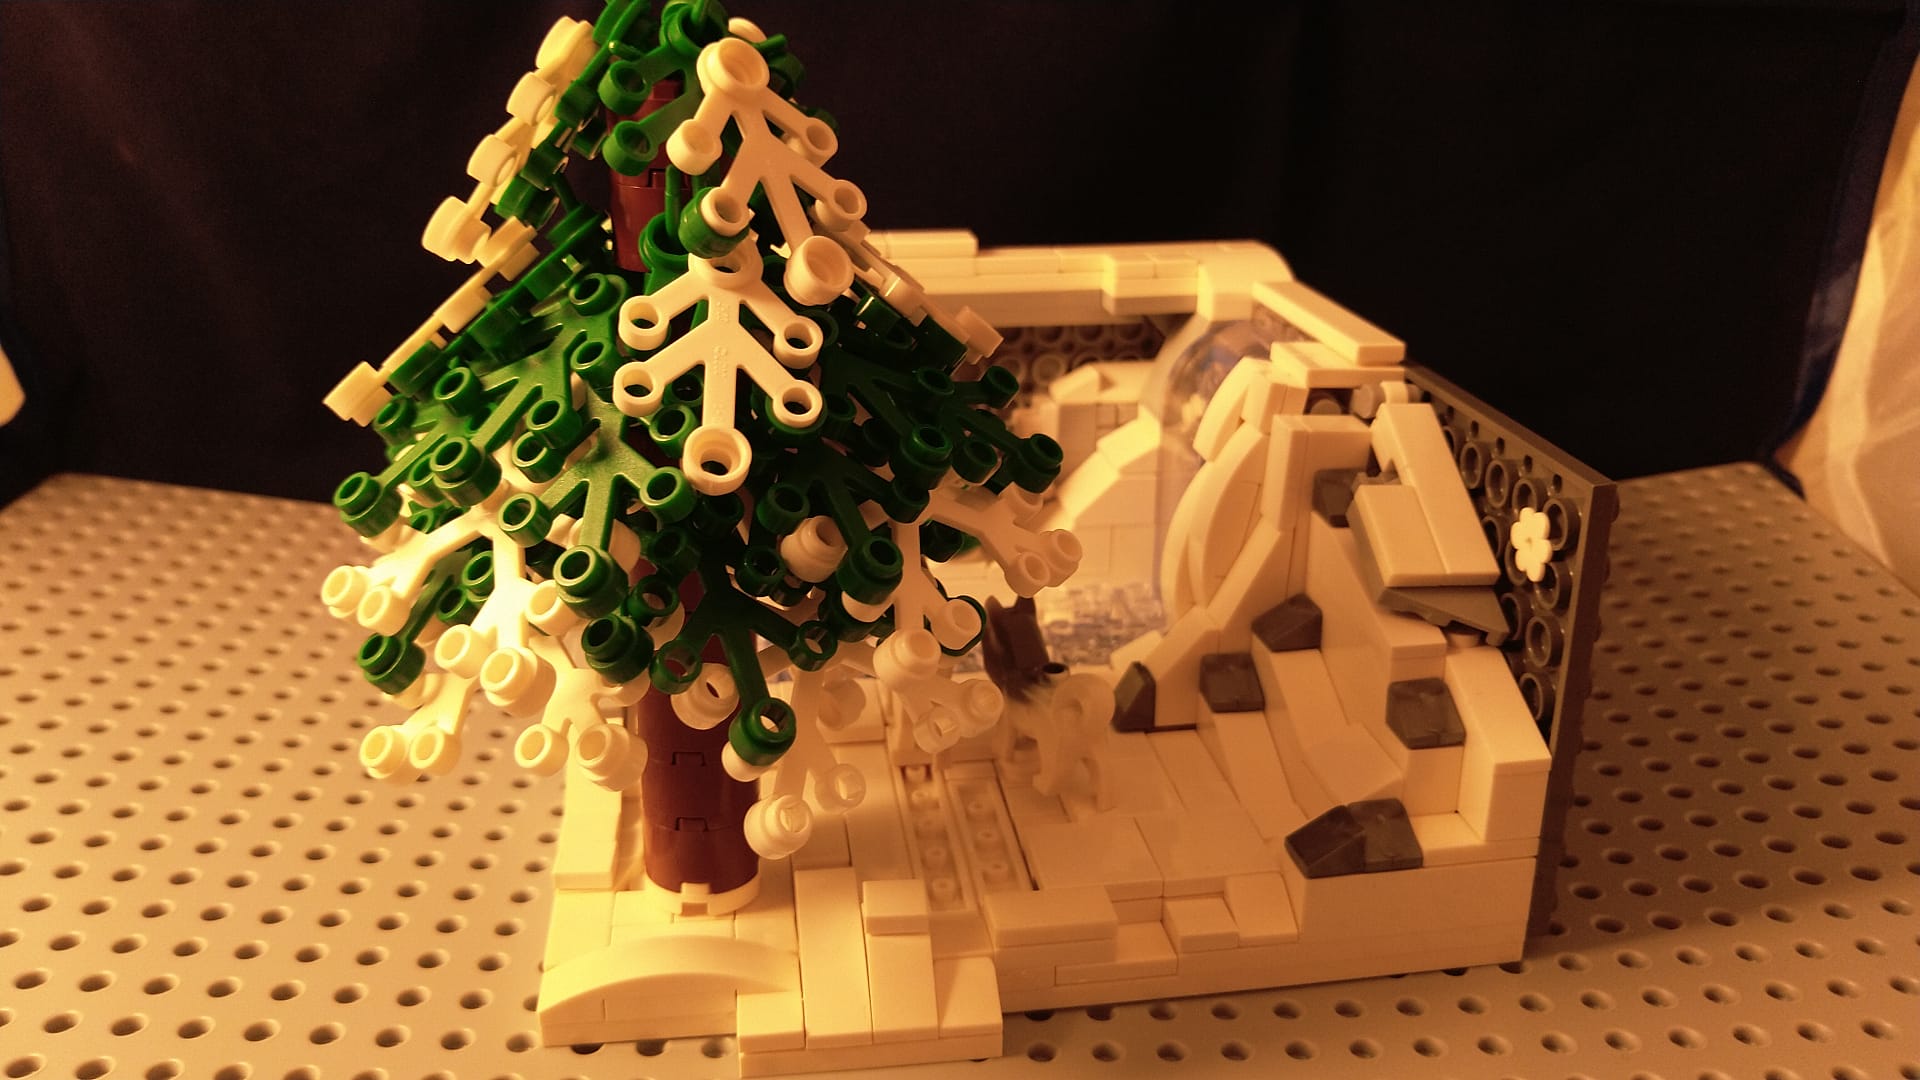 Concurs Winter Brickland – Creatia 5: Poveste de iarna cu Husky